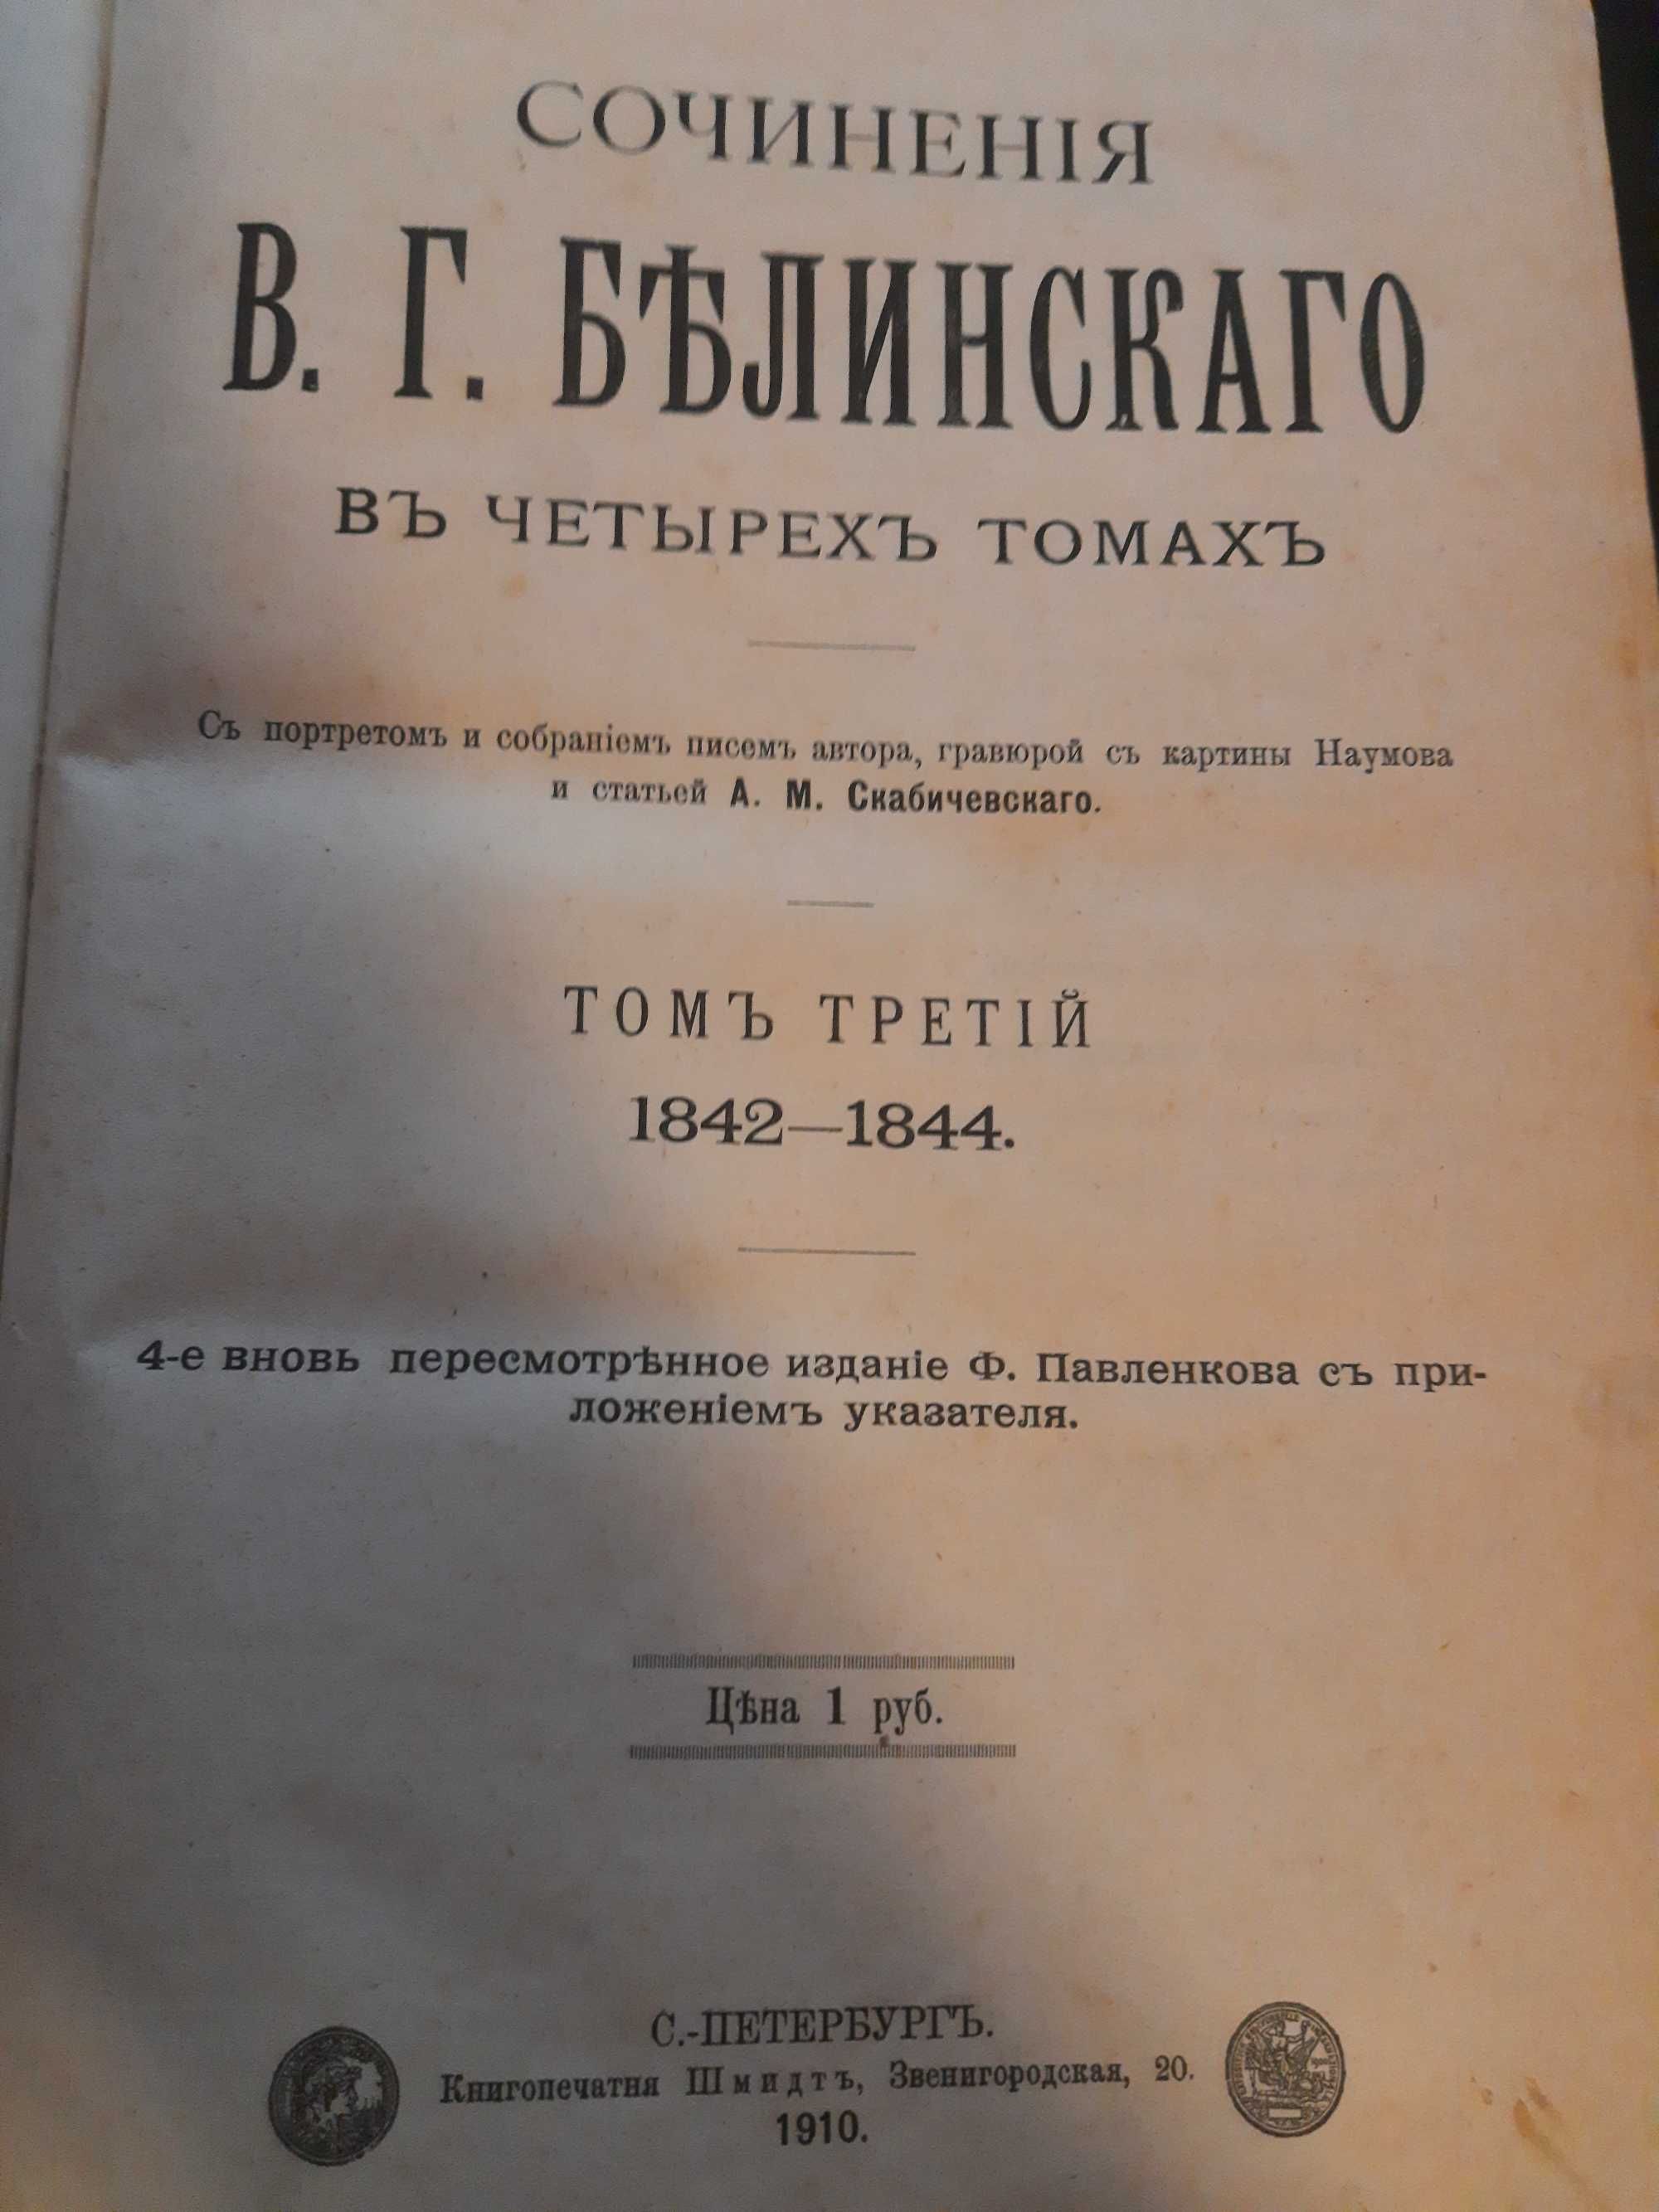 В. Г. Белинский 3 том (издания 1910)